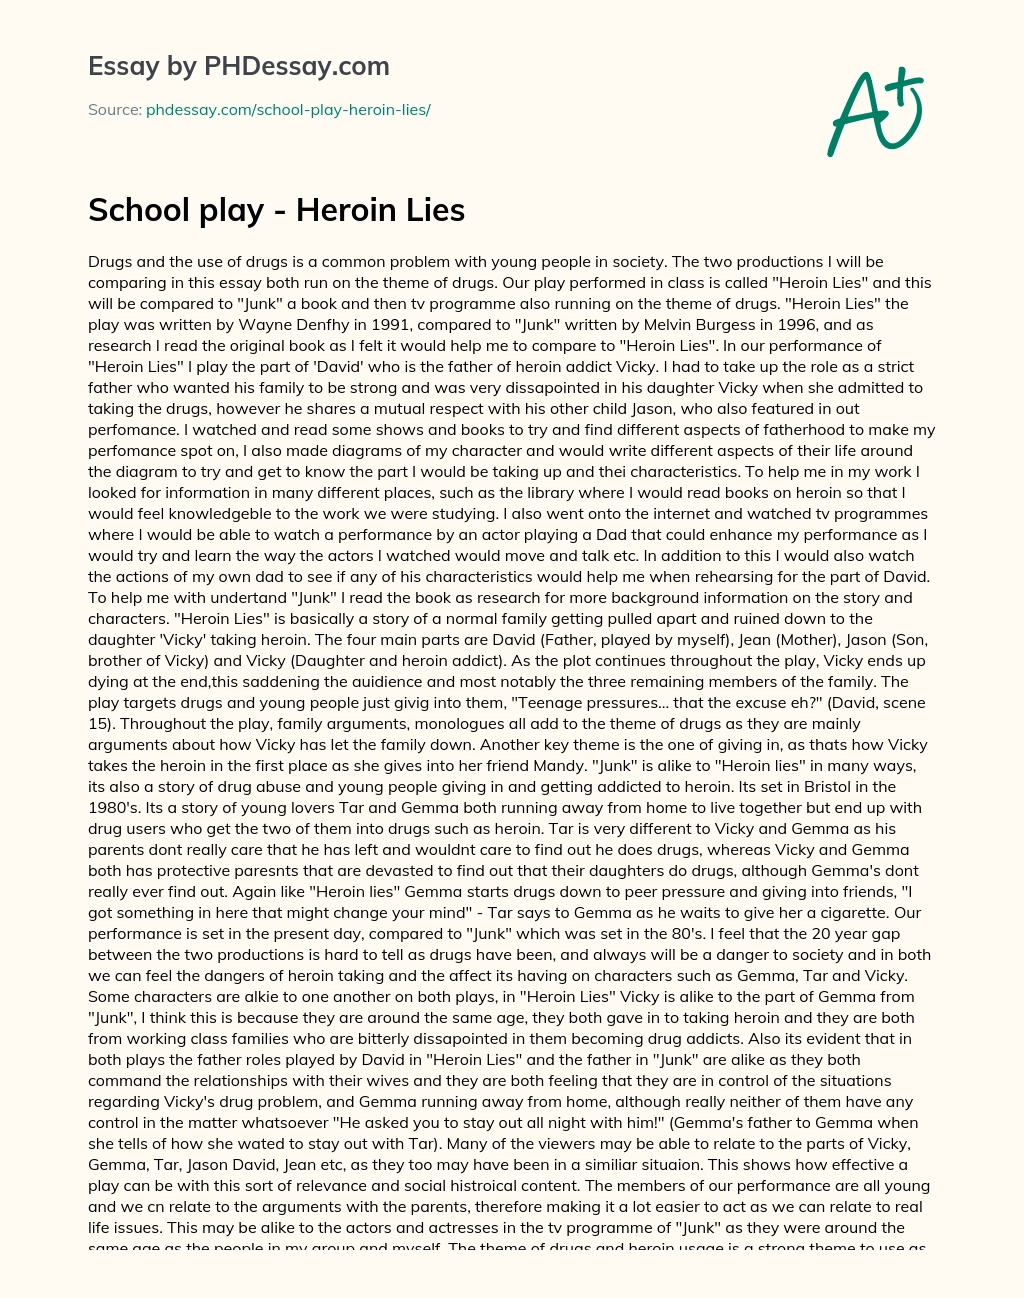 School play – Heroin Lies essay